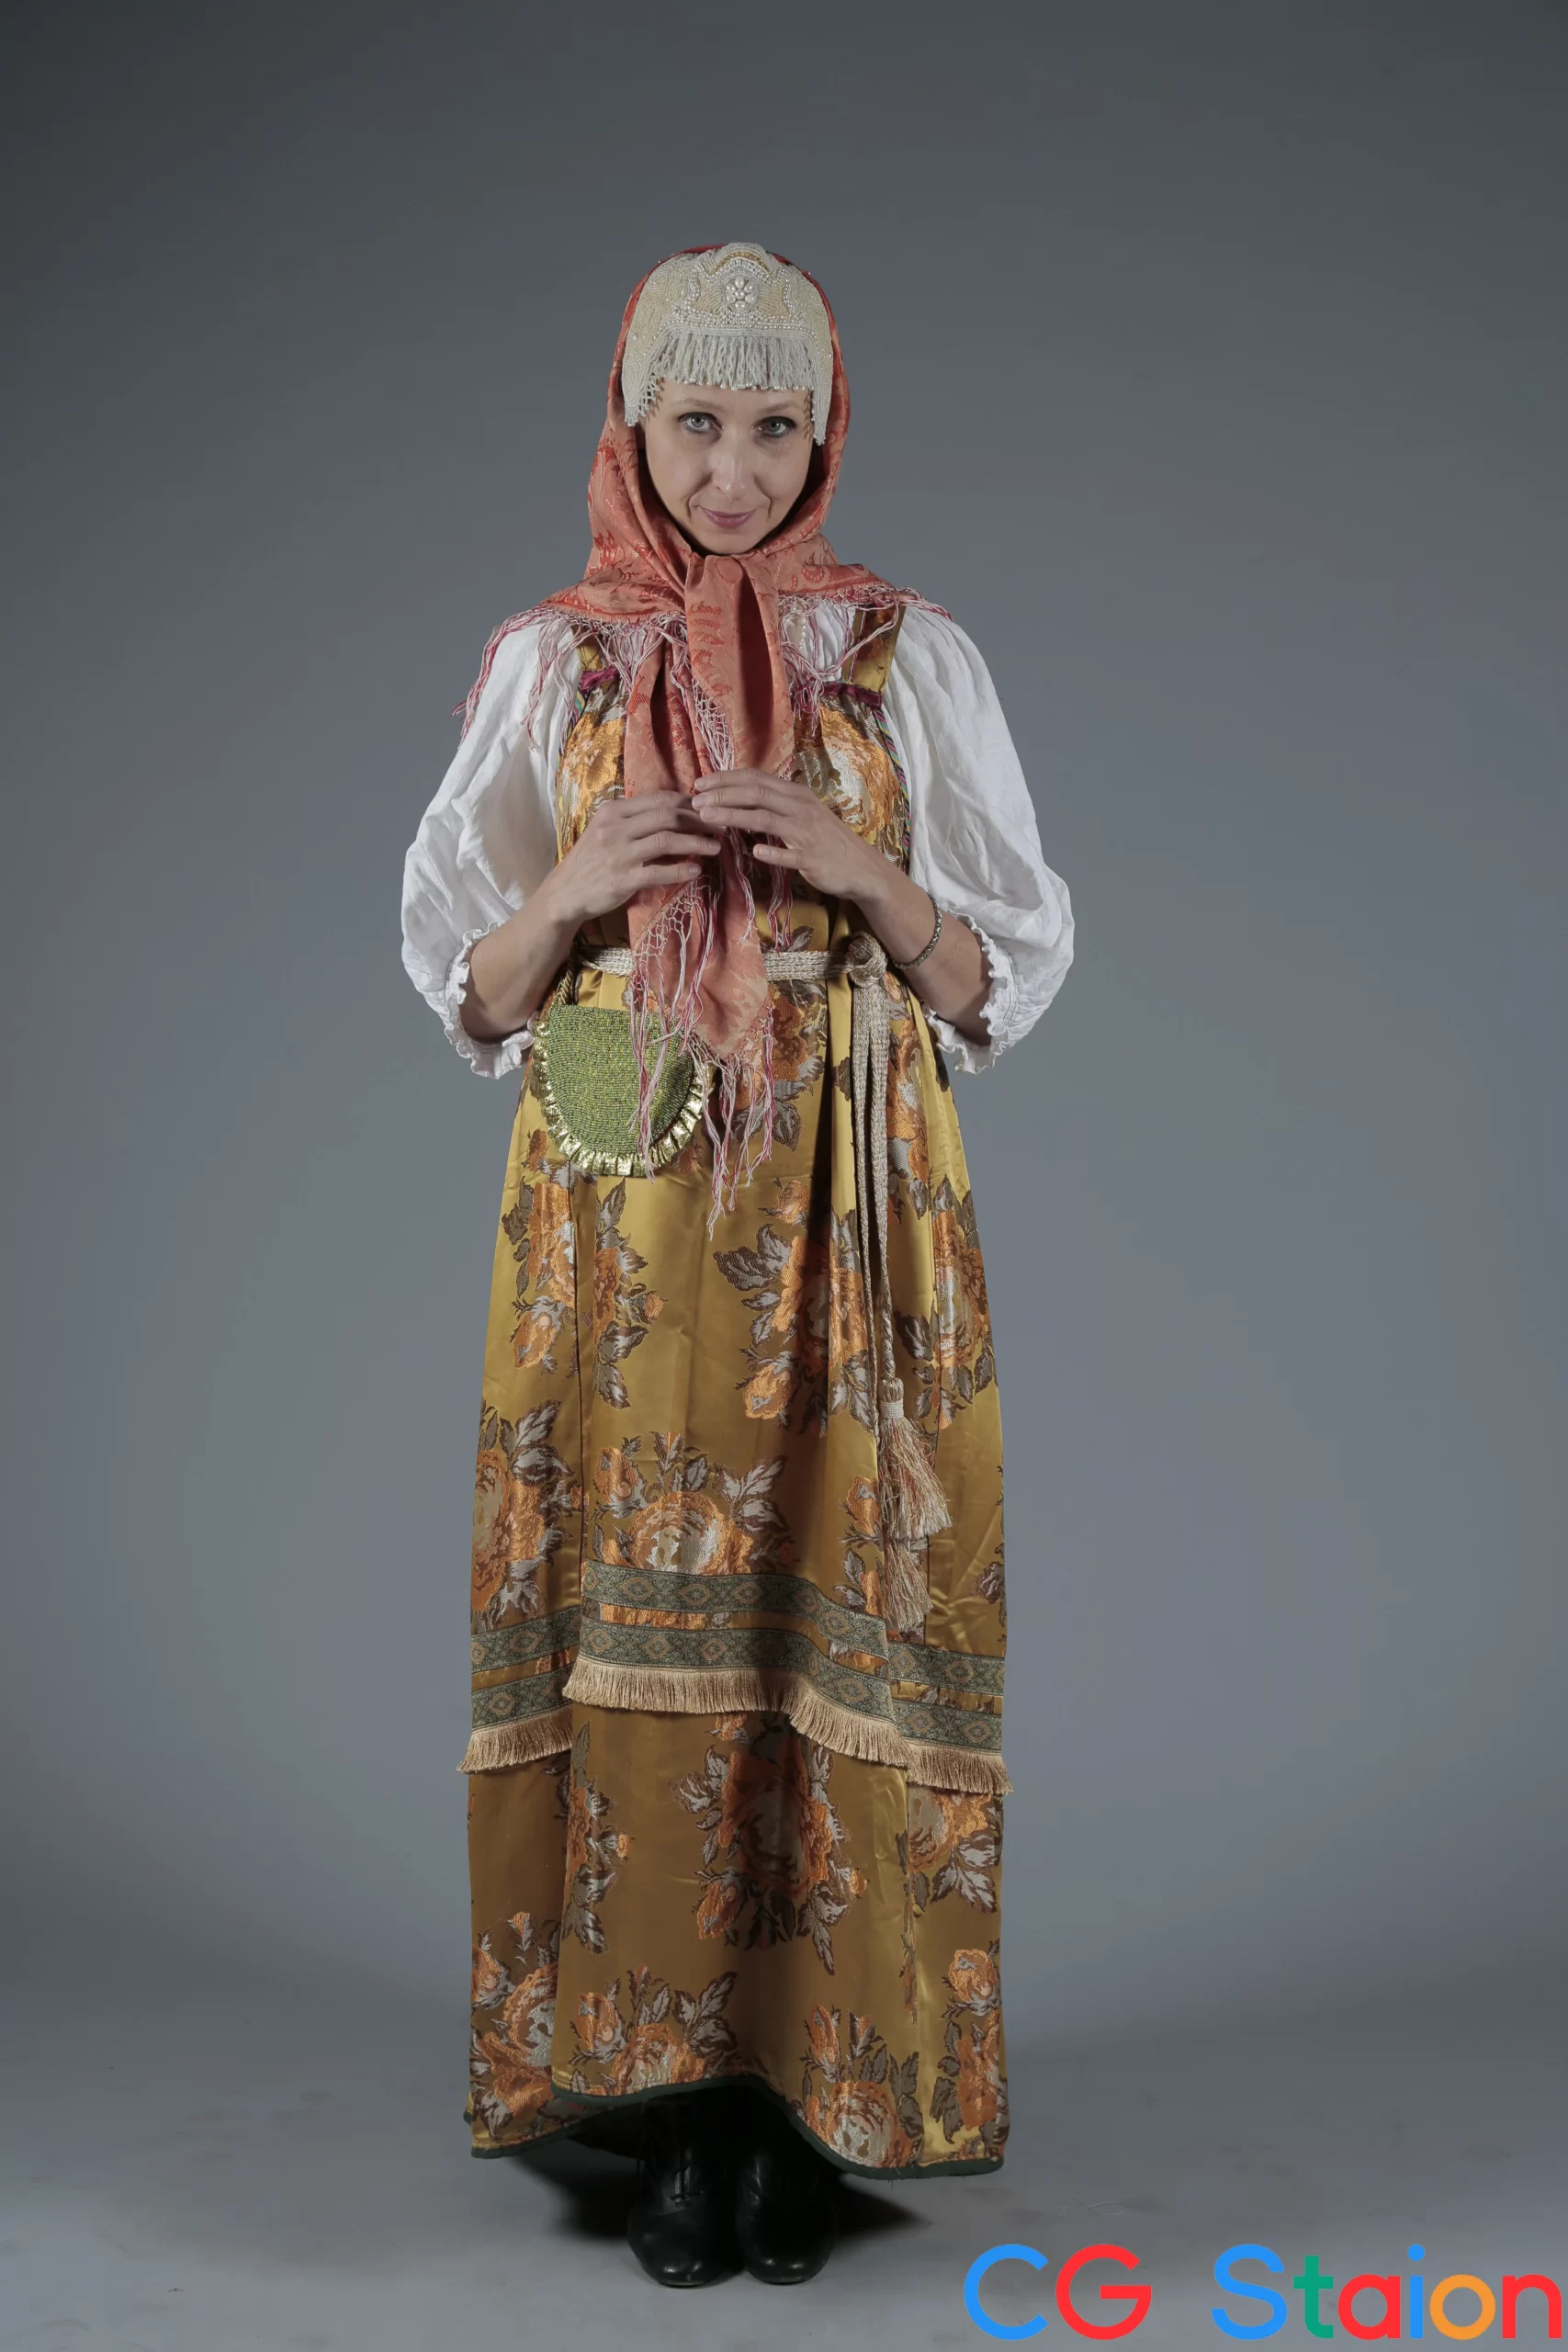 【高清参考图】392张男女俄罗斯传统服饰姿态动作高清参考图片3